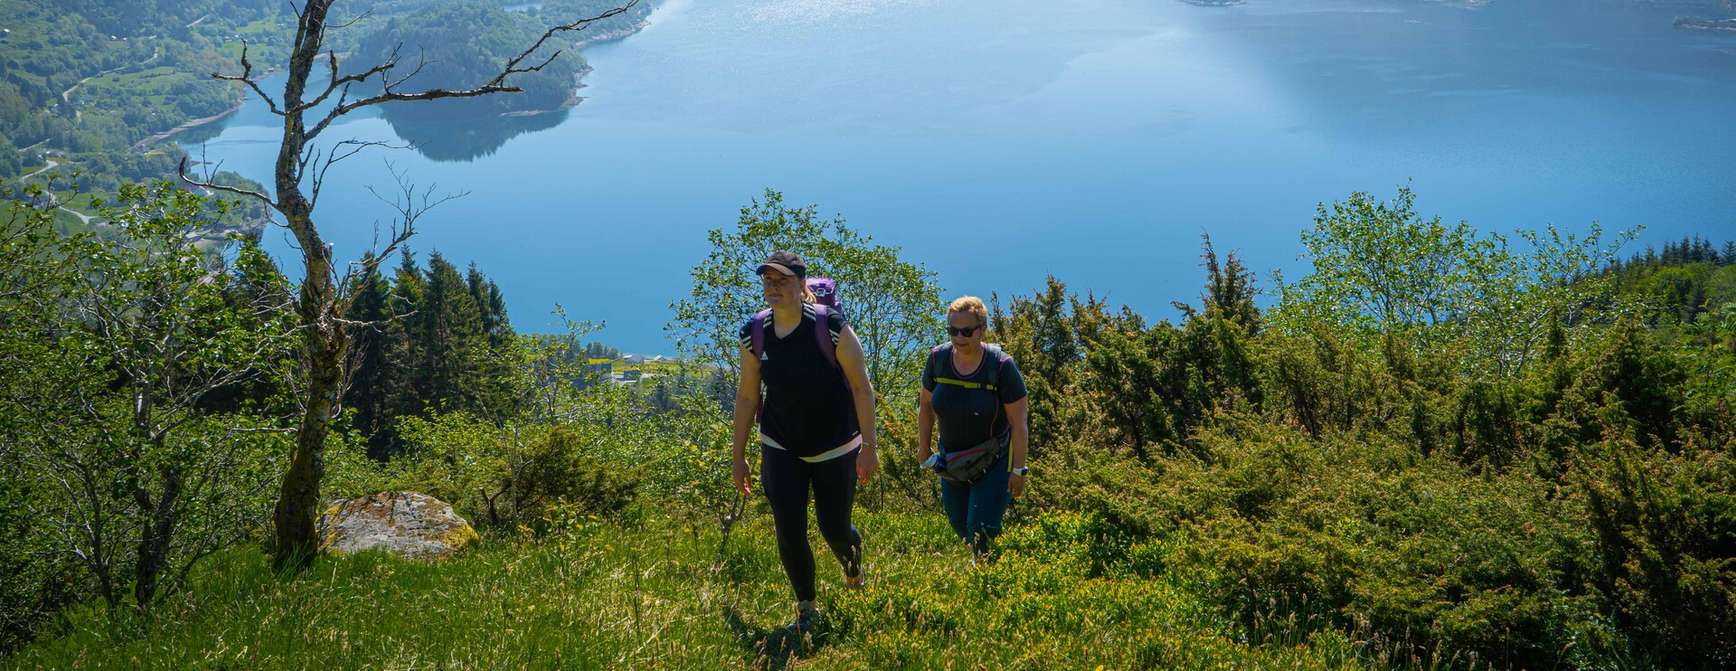 Zwei Frauen auf einem Spaziergang in grüner Umgebung mit Fjord und Bergen im Hintergrund.